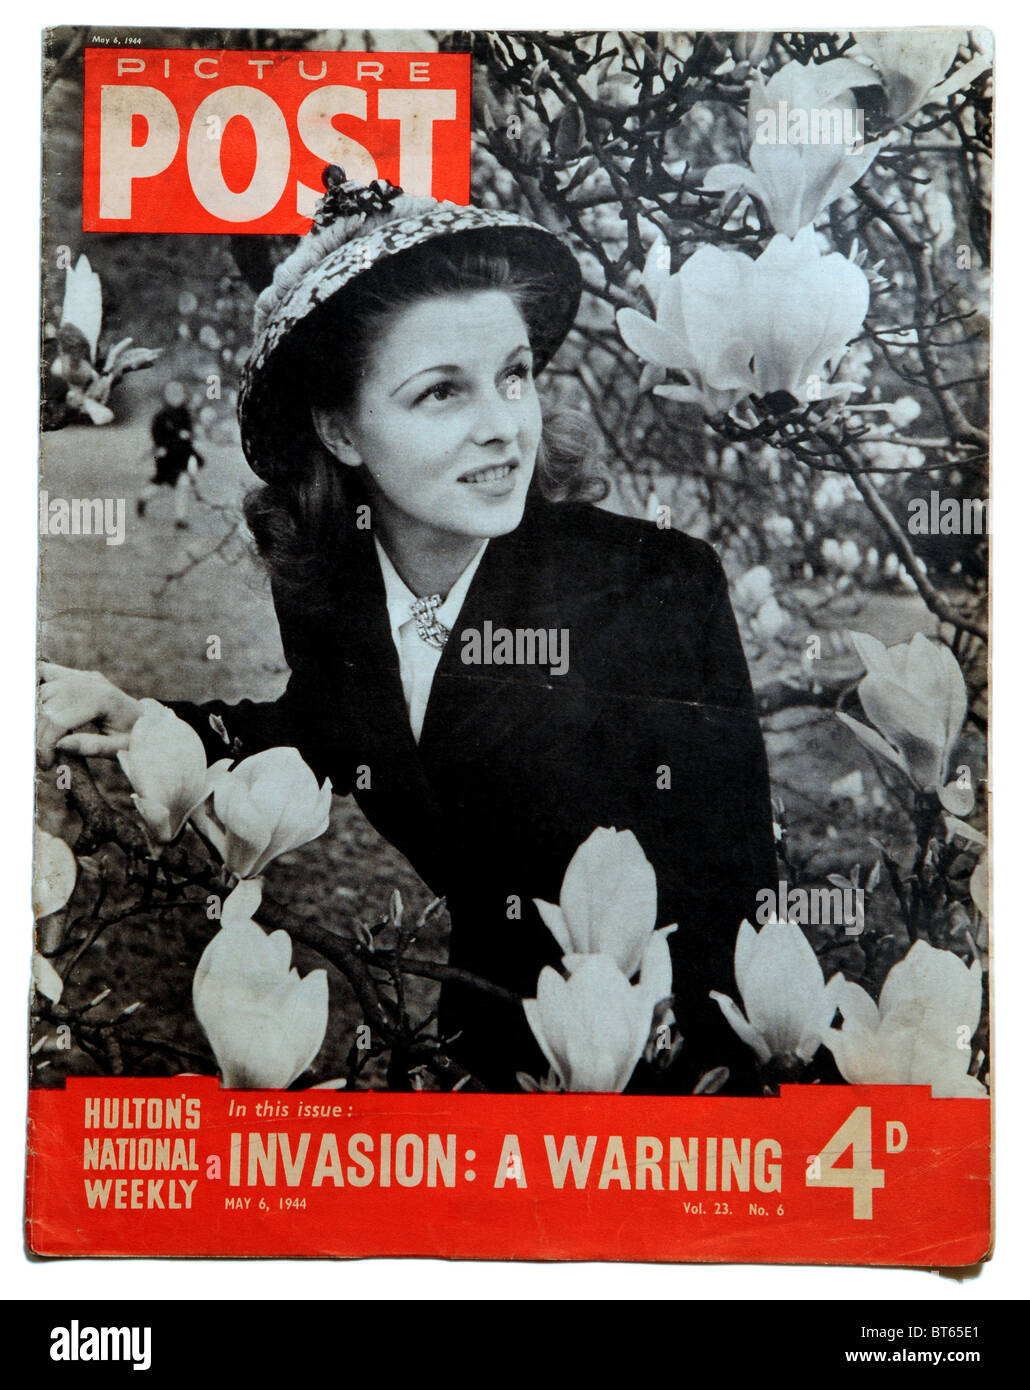 Magnola blossom spring lady hat femmina a 6 maggio 1944 Immagine Post photojournalistic prominente rivista pubblicata Regno Unito 19 Foto Stock